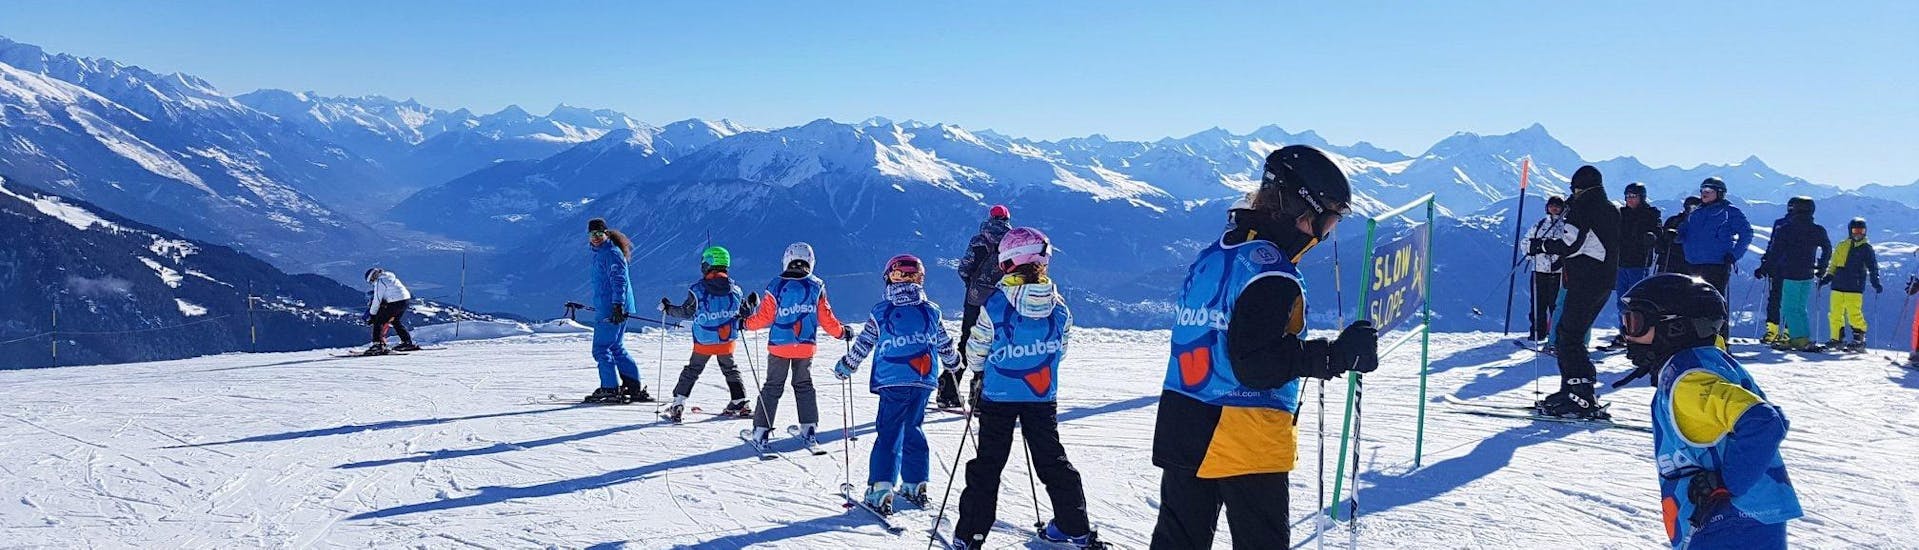 Skilessen voor kinderen (6-16 jaar) voor alle niveaus.